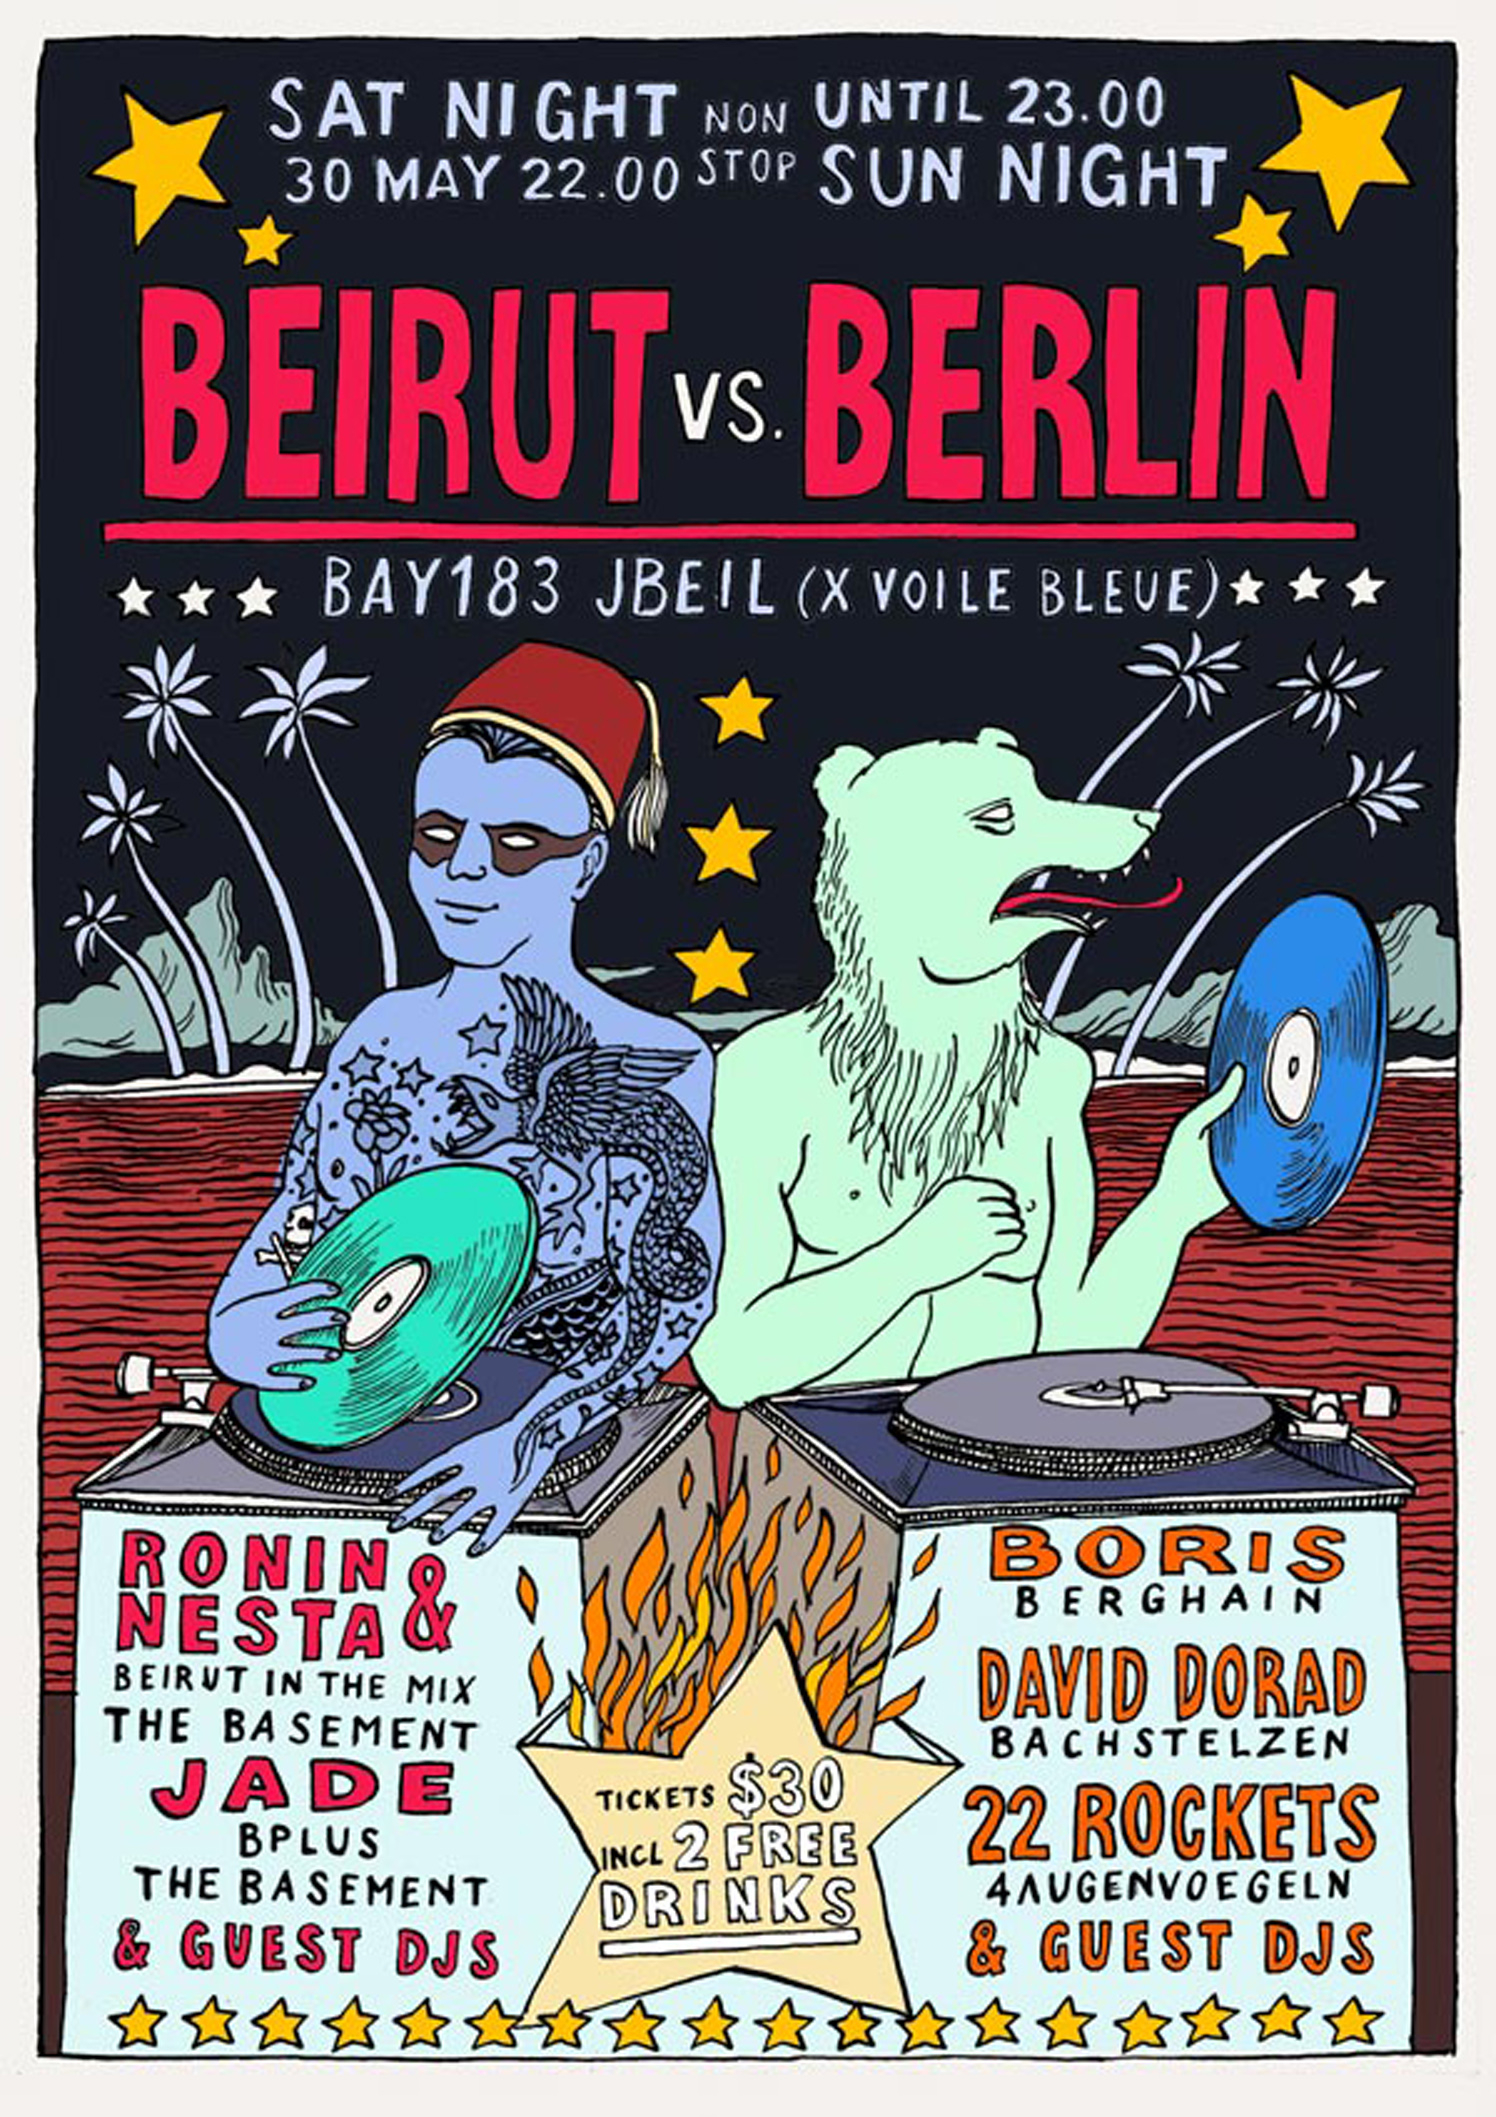 Beirut vs Berlin